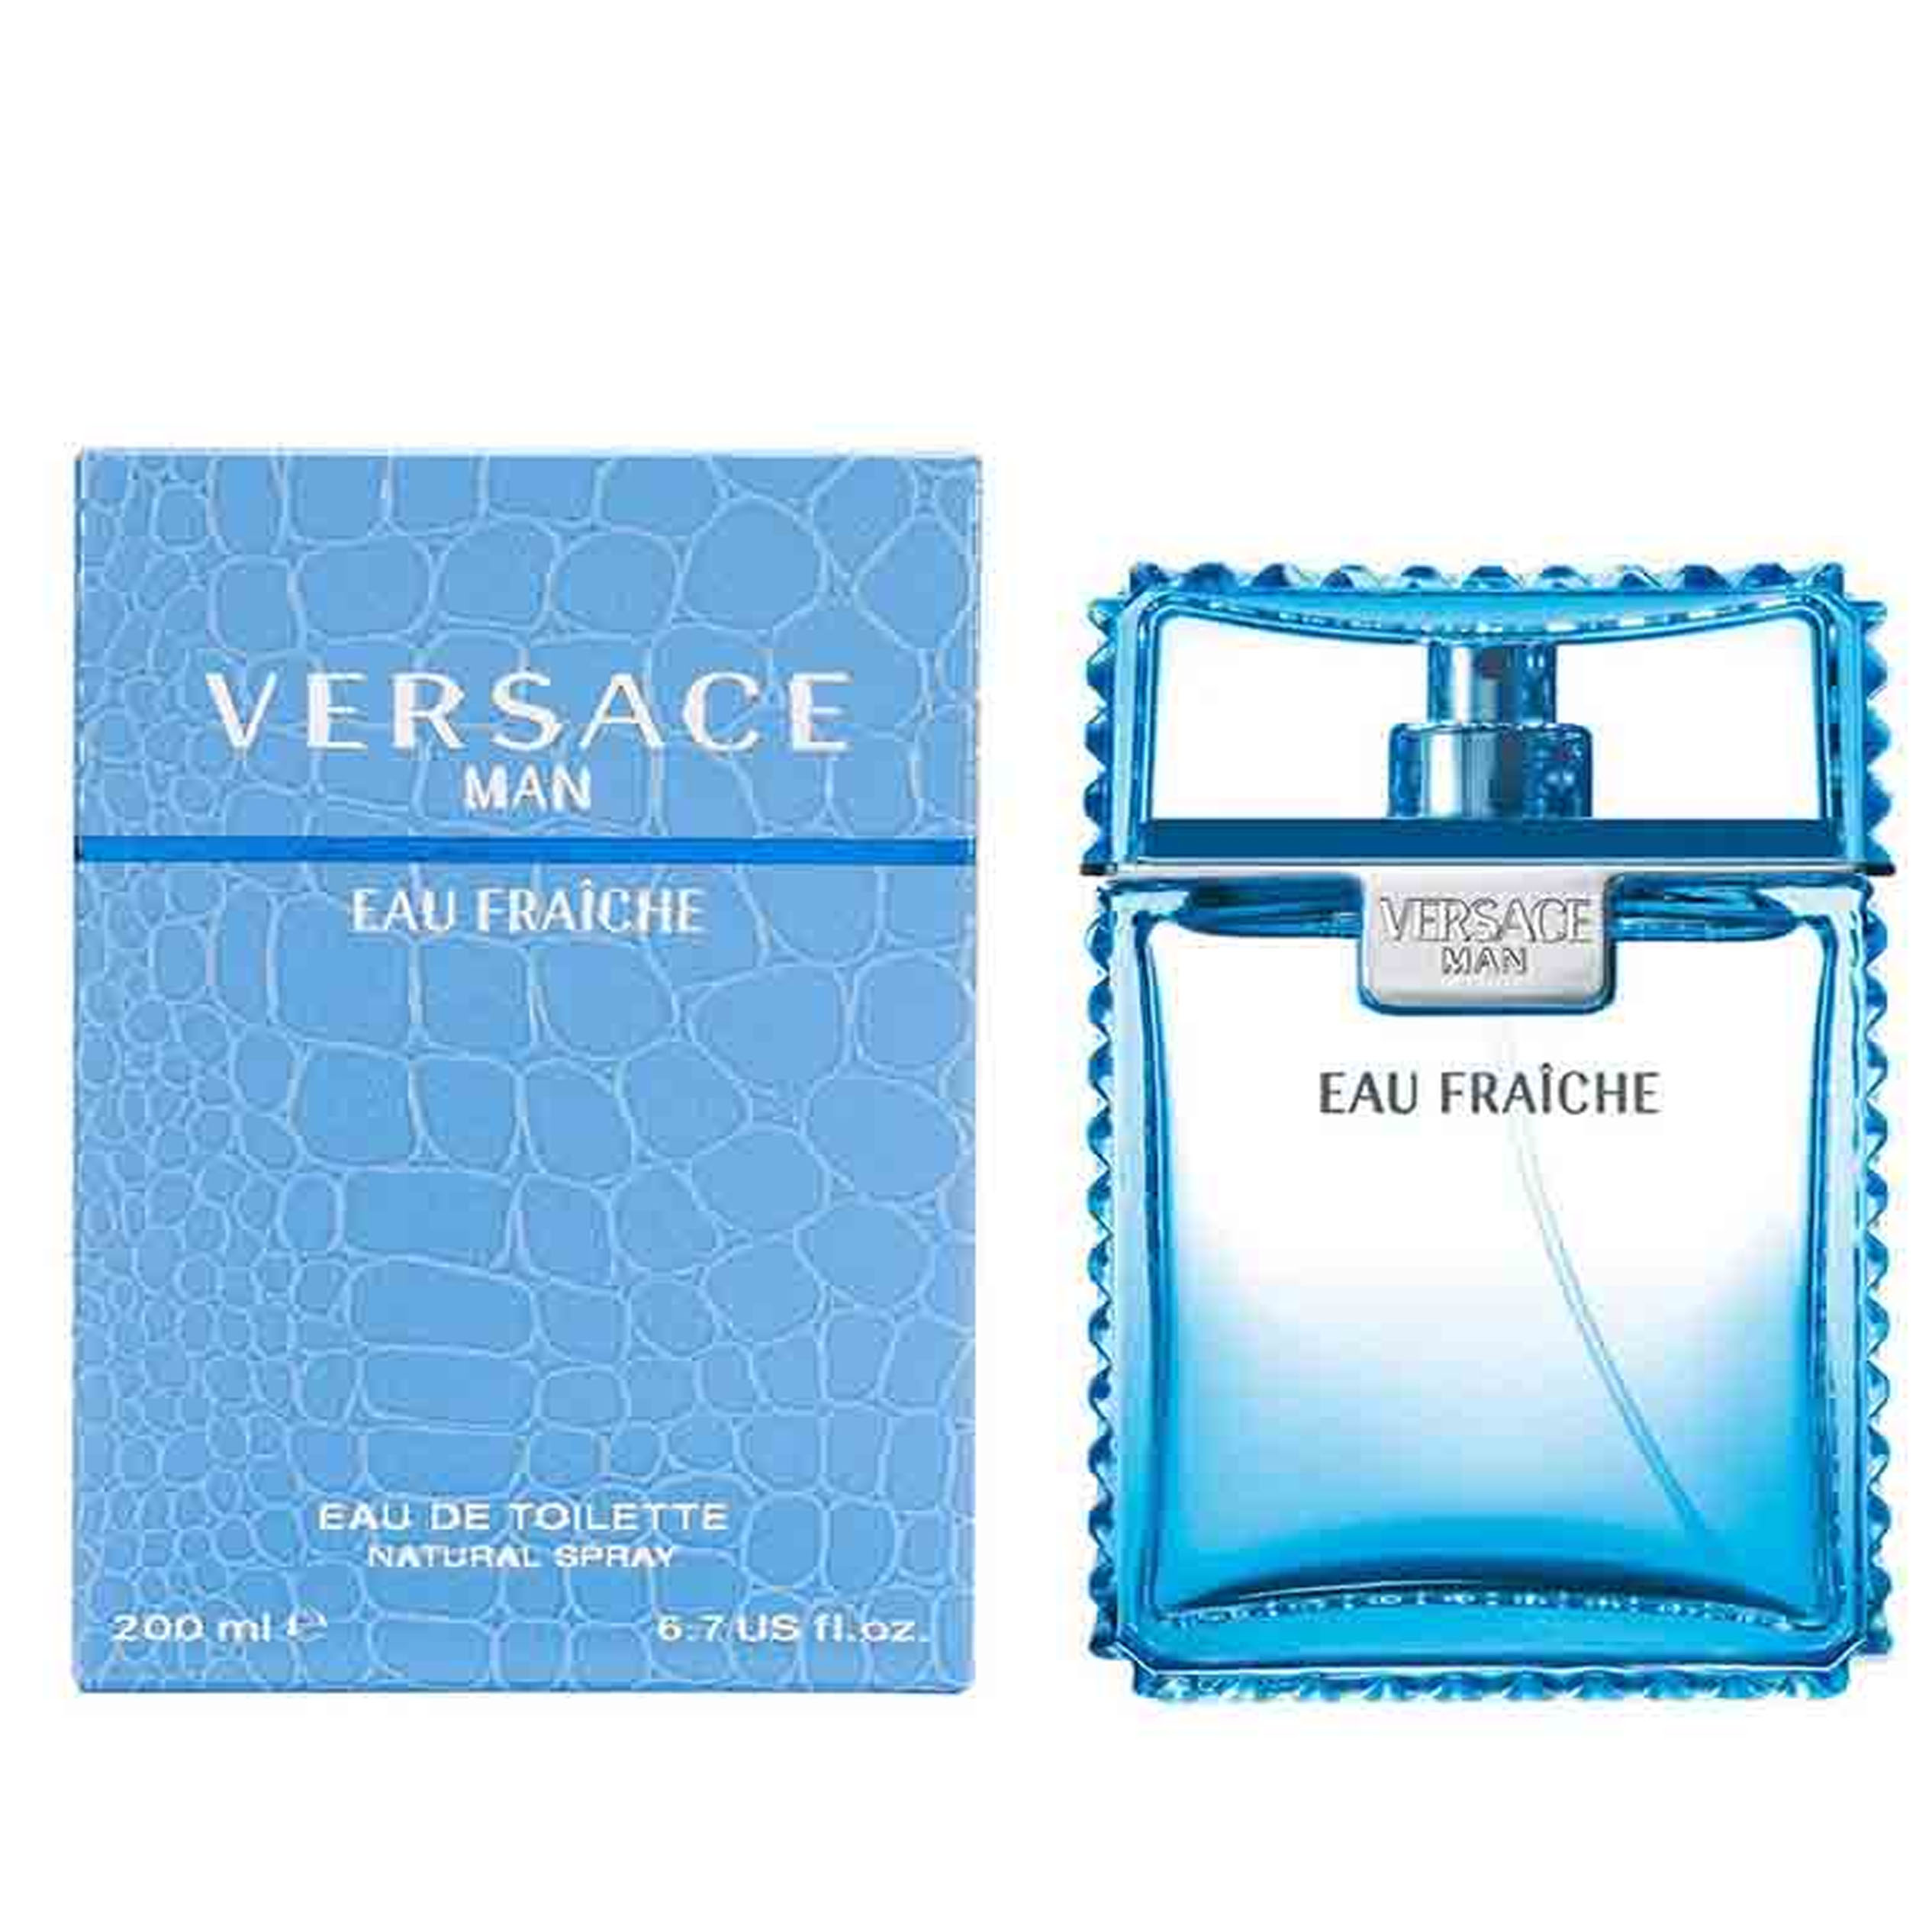 Perfume Versace Man Eau Fraiche Versace    (Replica Con Fragancia Importada)- Hombre